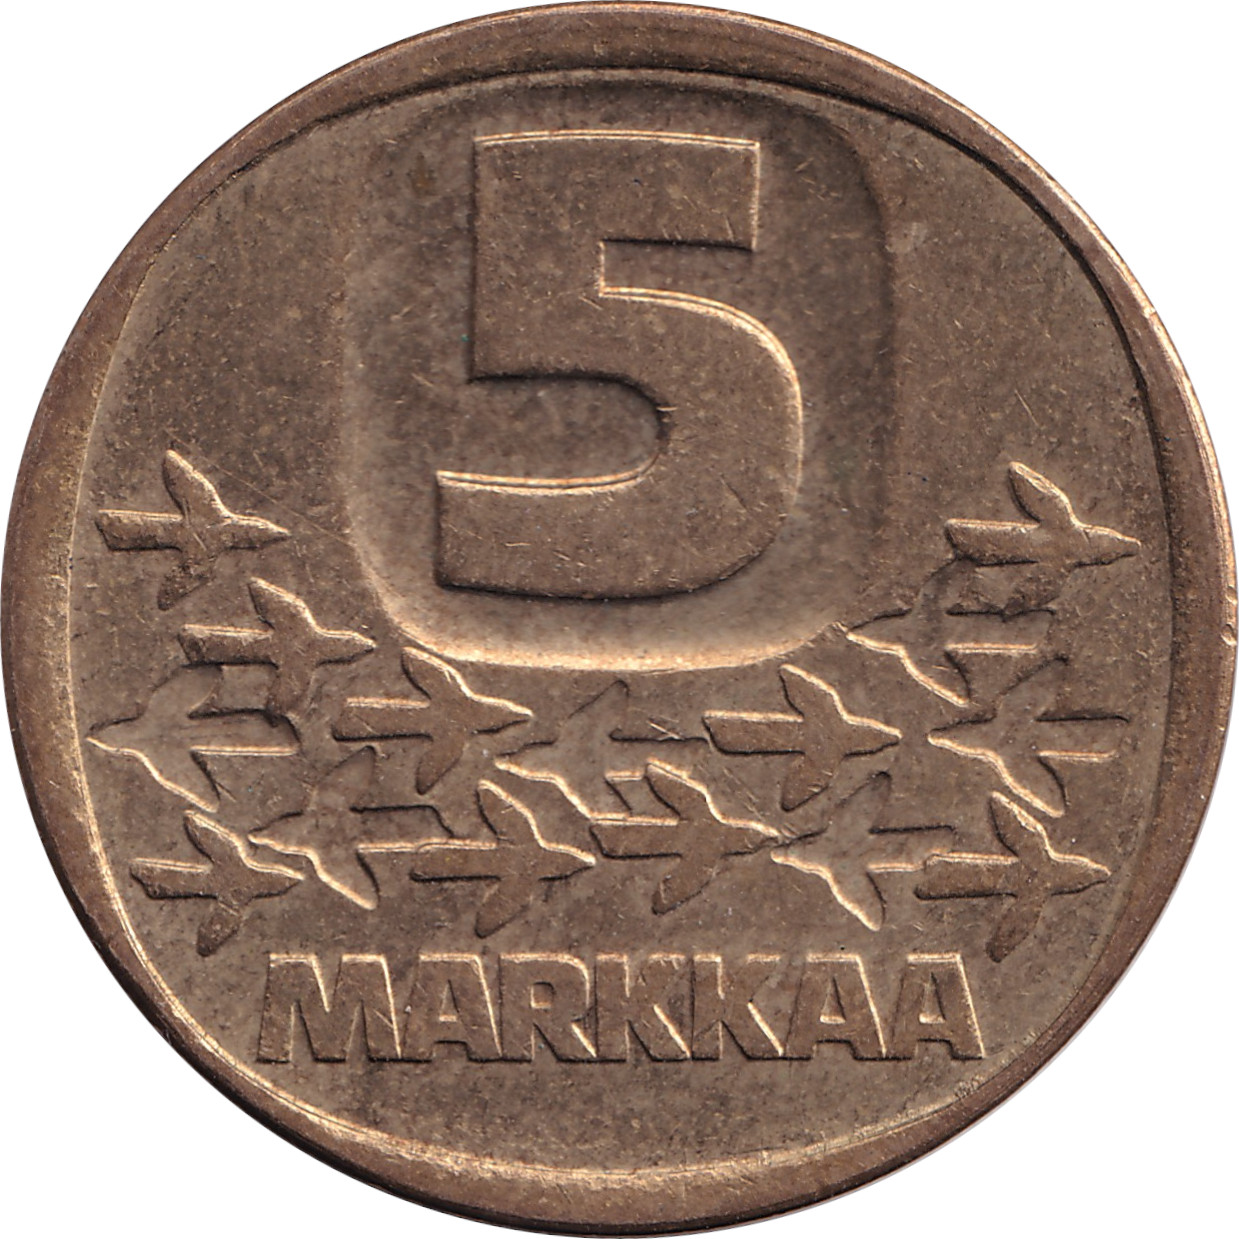 5 markkaa - Ship - Small face value